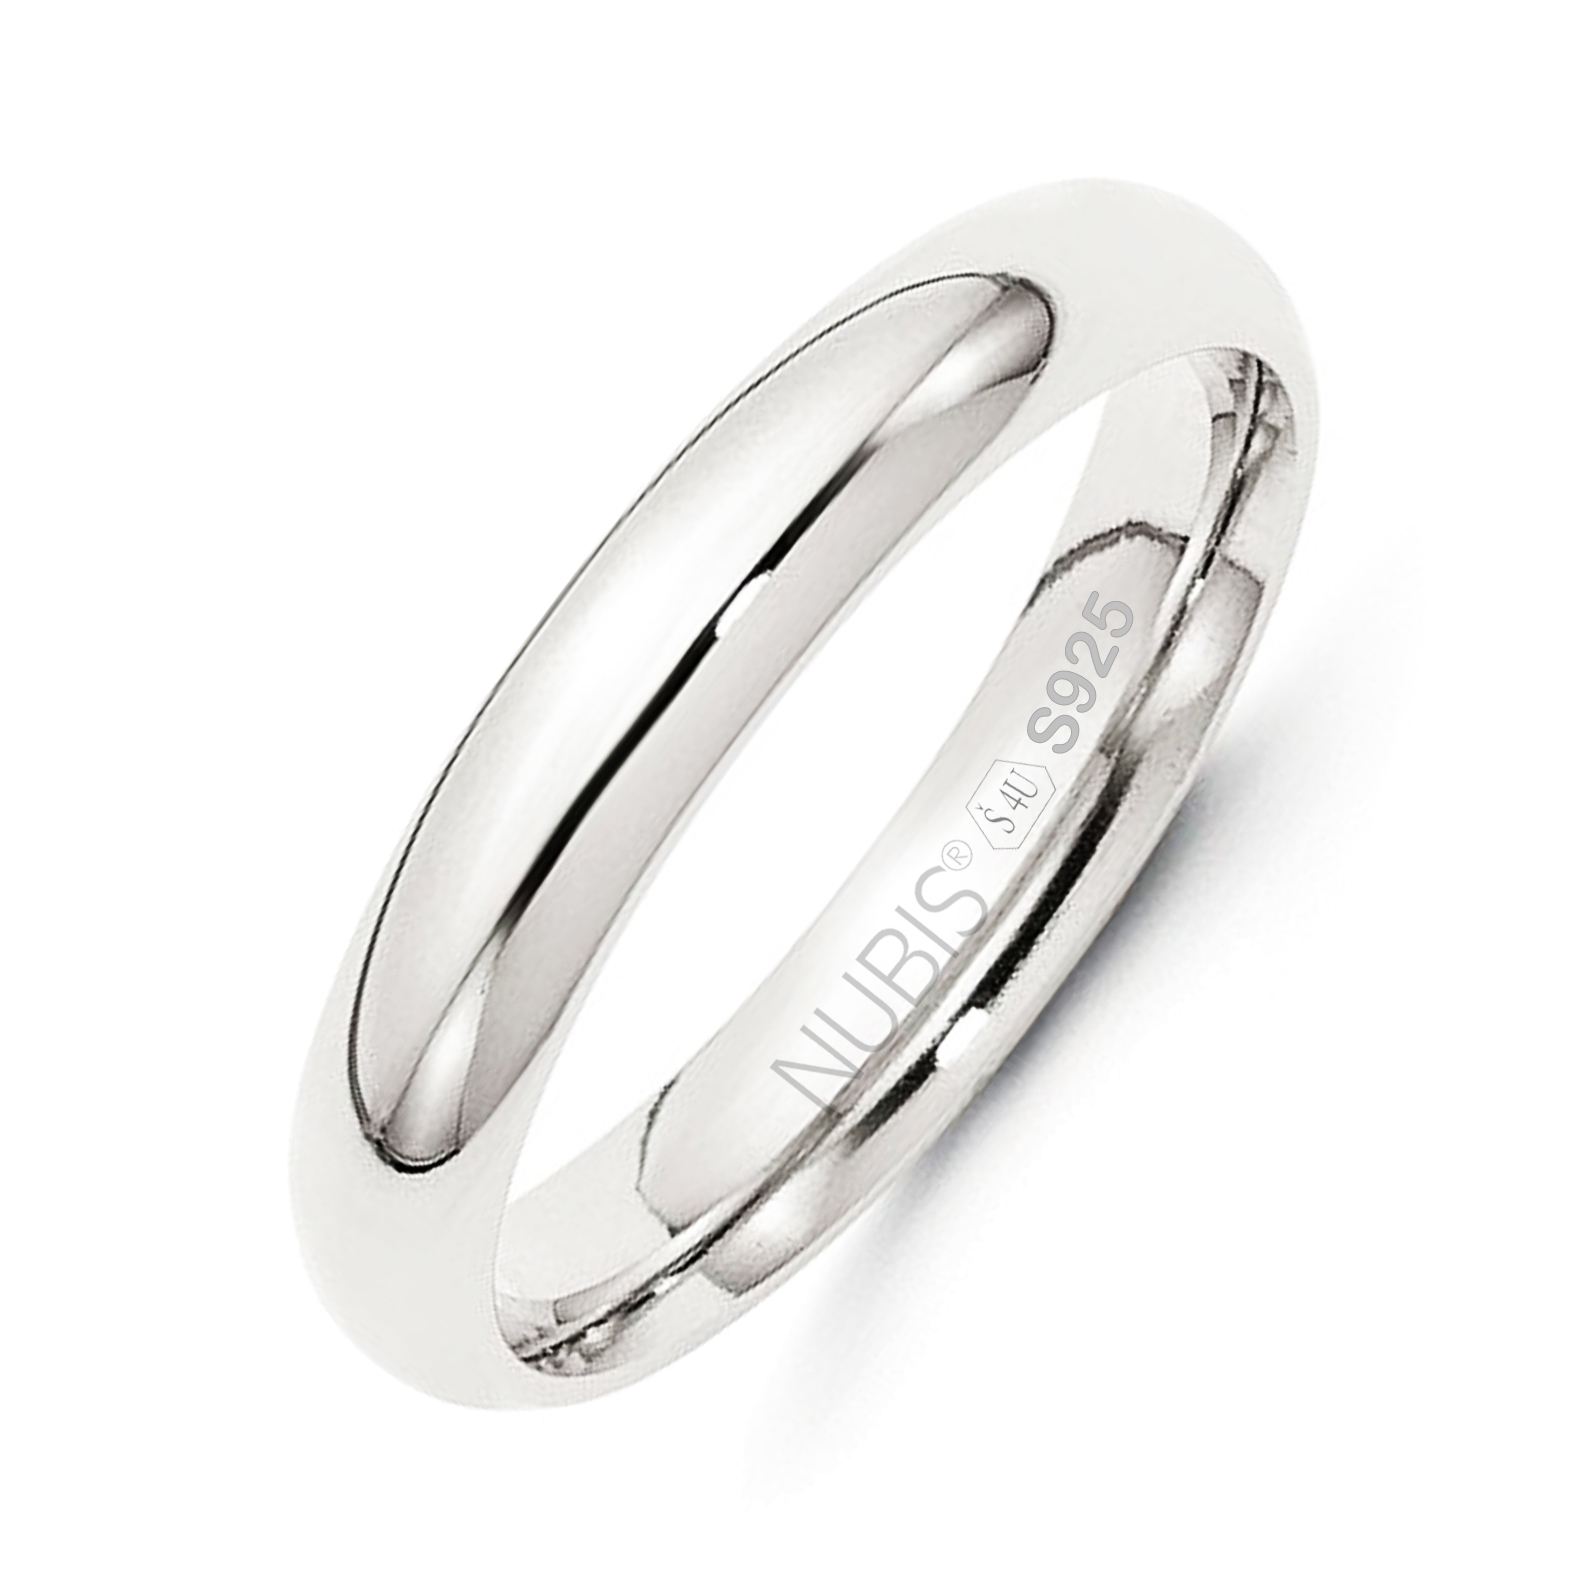 NUBIS® NB101-4 Stříbrný snubní prsten šíře 4 mm - velikost 55 - NB101-4-55